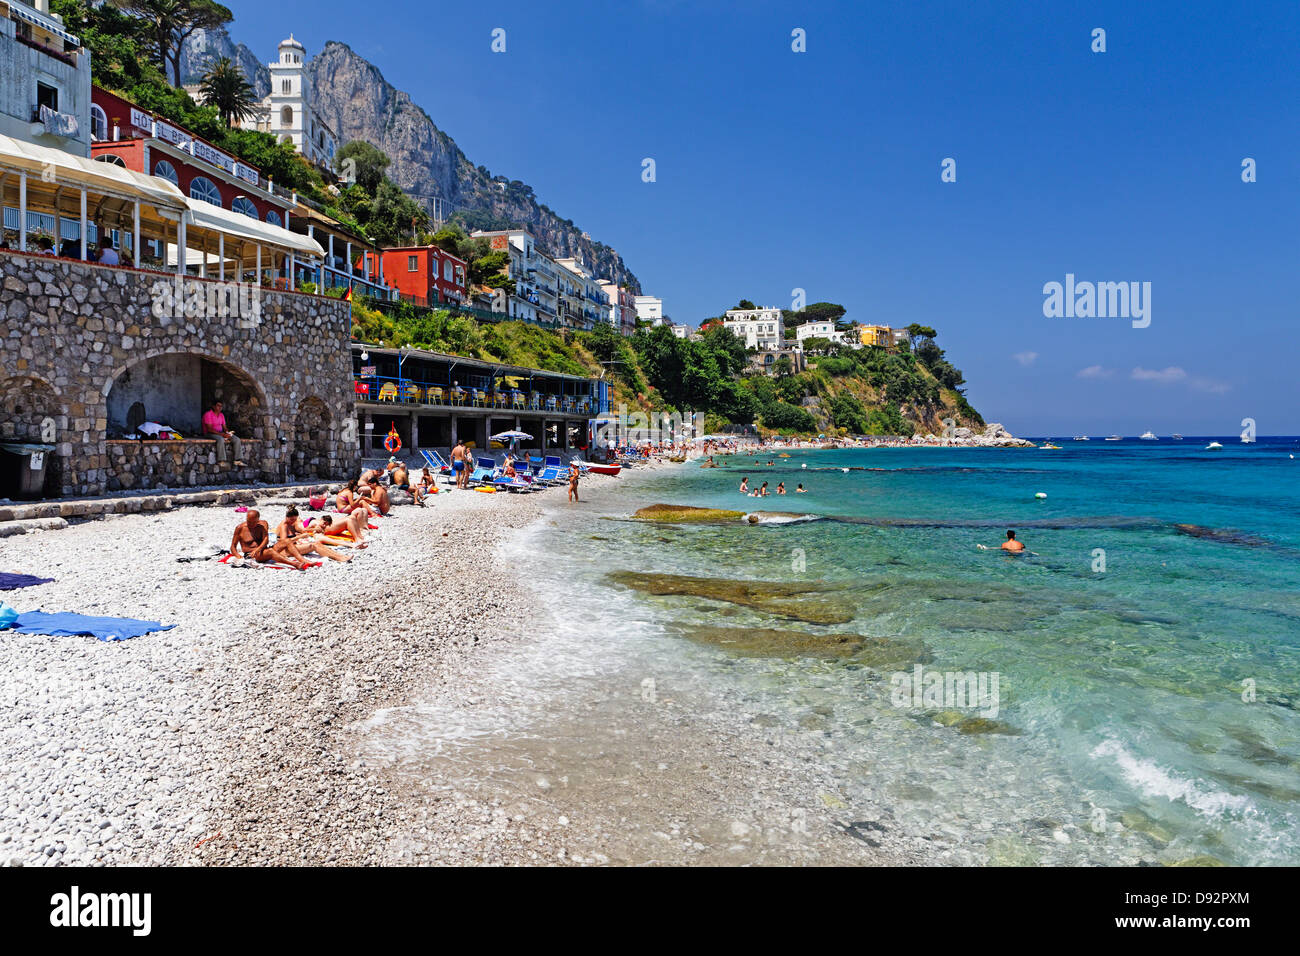 Les gens en train de bronzer sur une plage, Capri, Campanie, Italie Banque D'Images